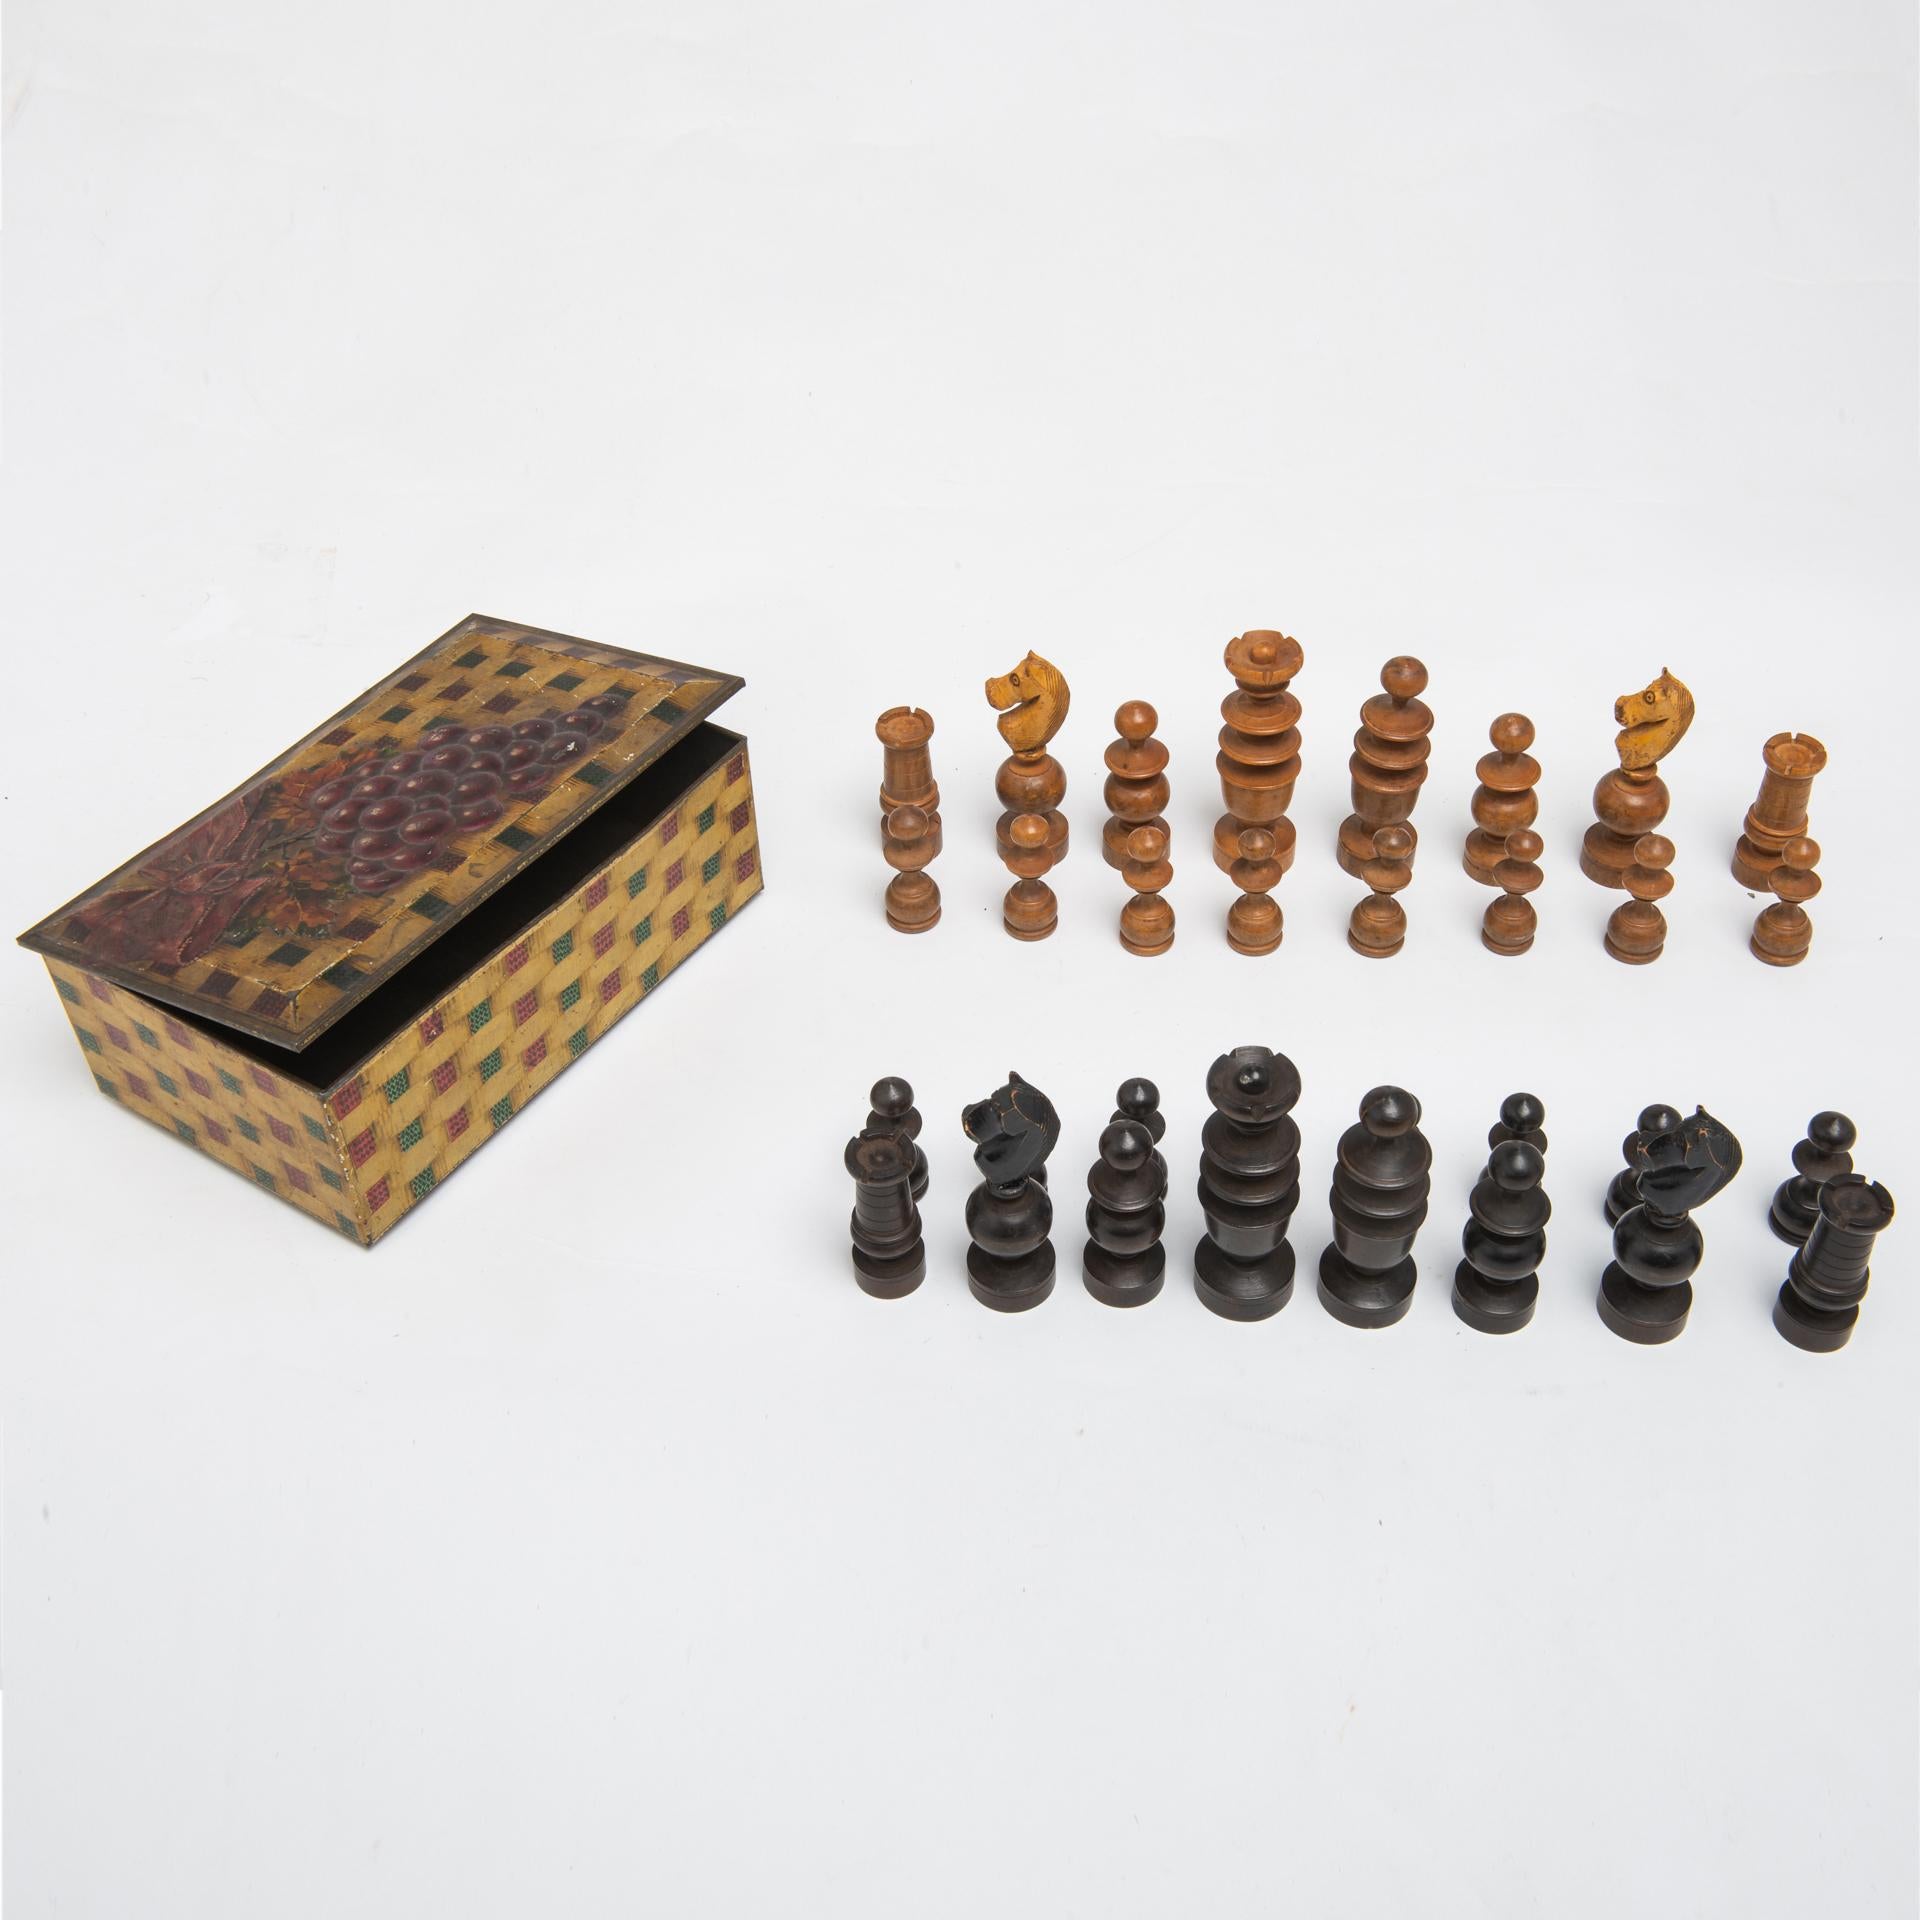 Jeu d'échecs anglais en bois ancien : sa taille est déjà marquée, le roi mesure cm. 9,5 de haut.
 La boîte en métal avec raisin est anglaise et est un cadeau pour vous.
J'espère que vous avez une table de jeu avec un échiquier (comme j'en ai une à